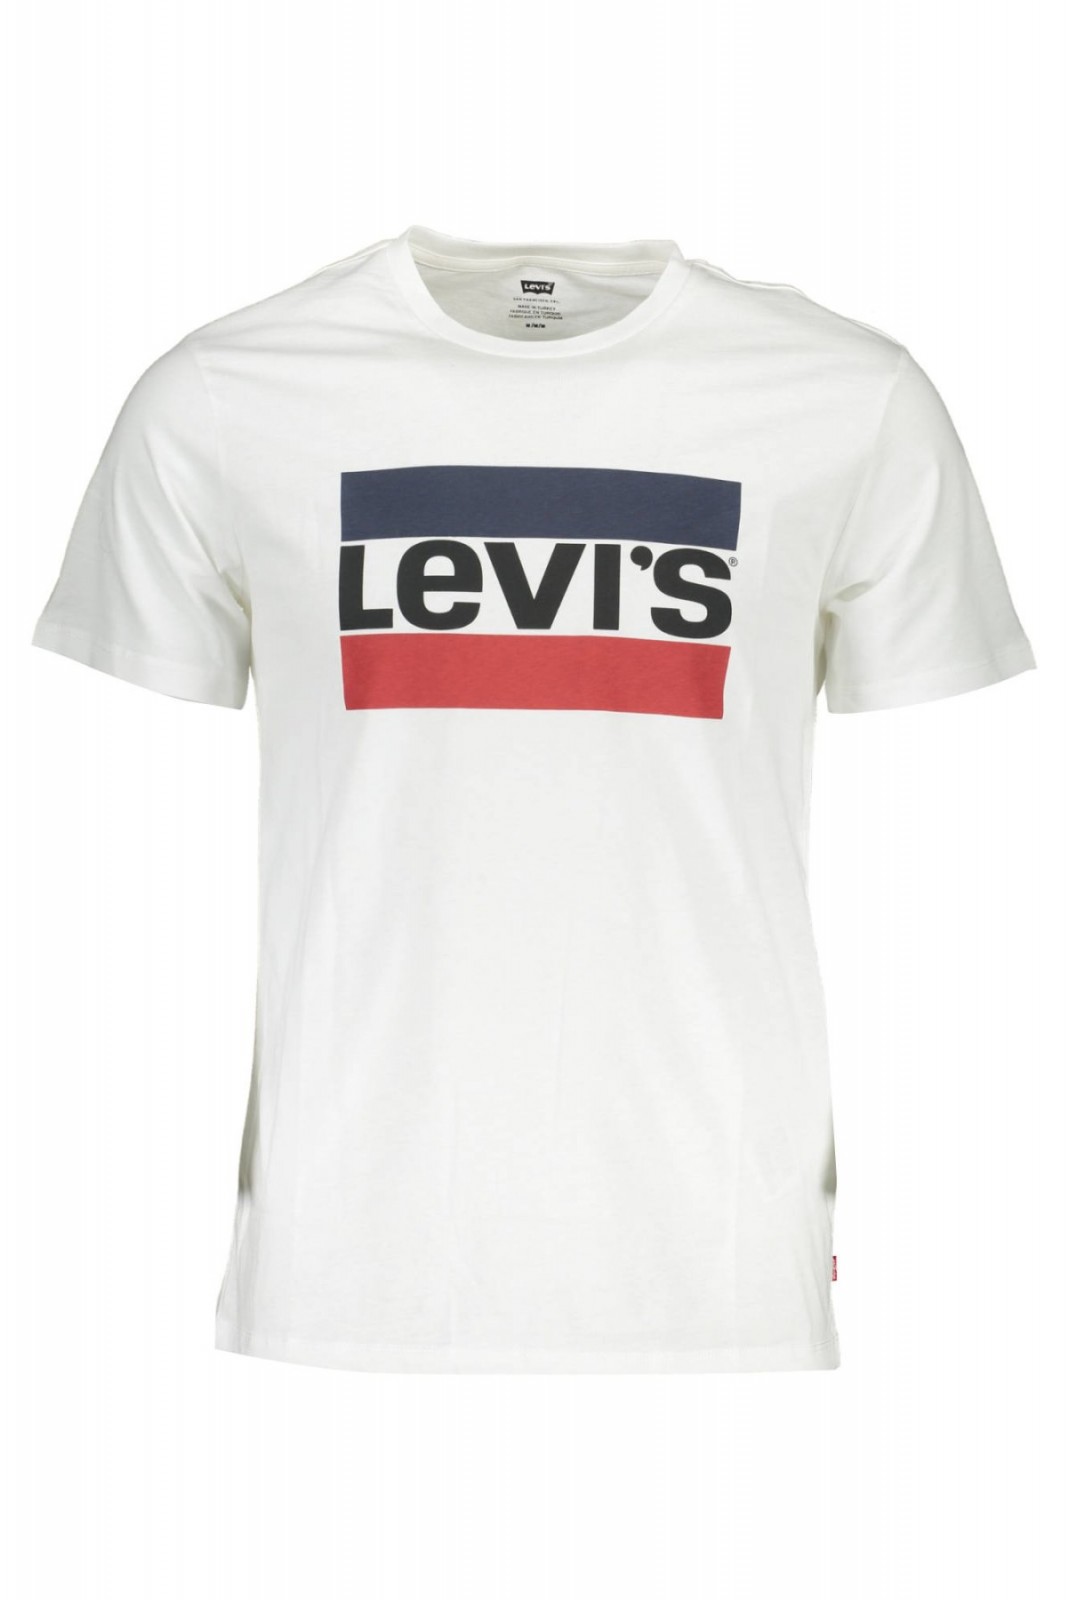 T-shirt MC - LEVI'S - 39636_BIANCO_0000 Levi's BIANCO_0000 39636